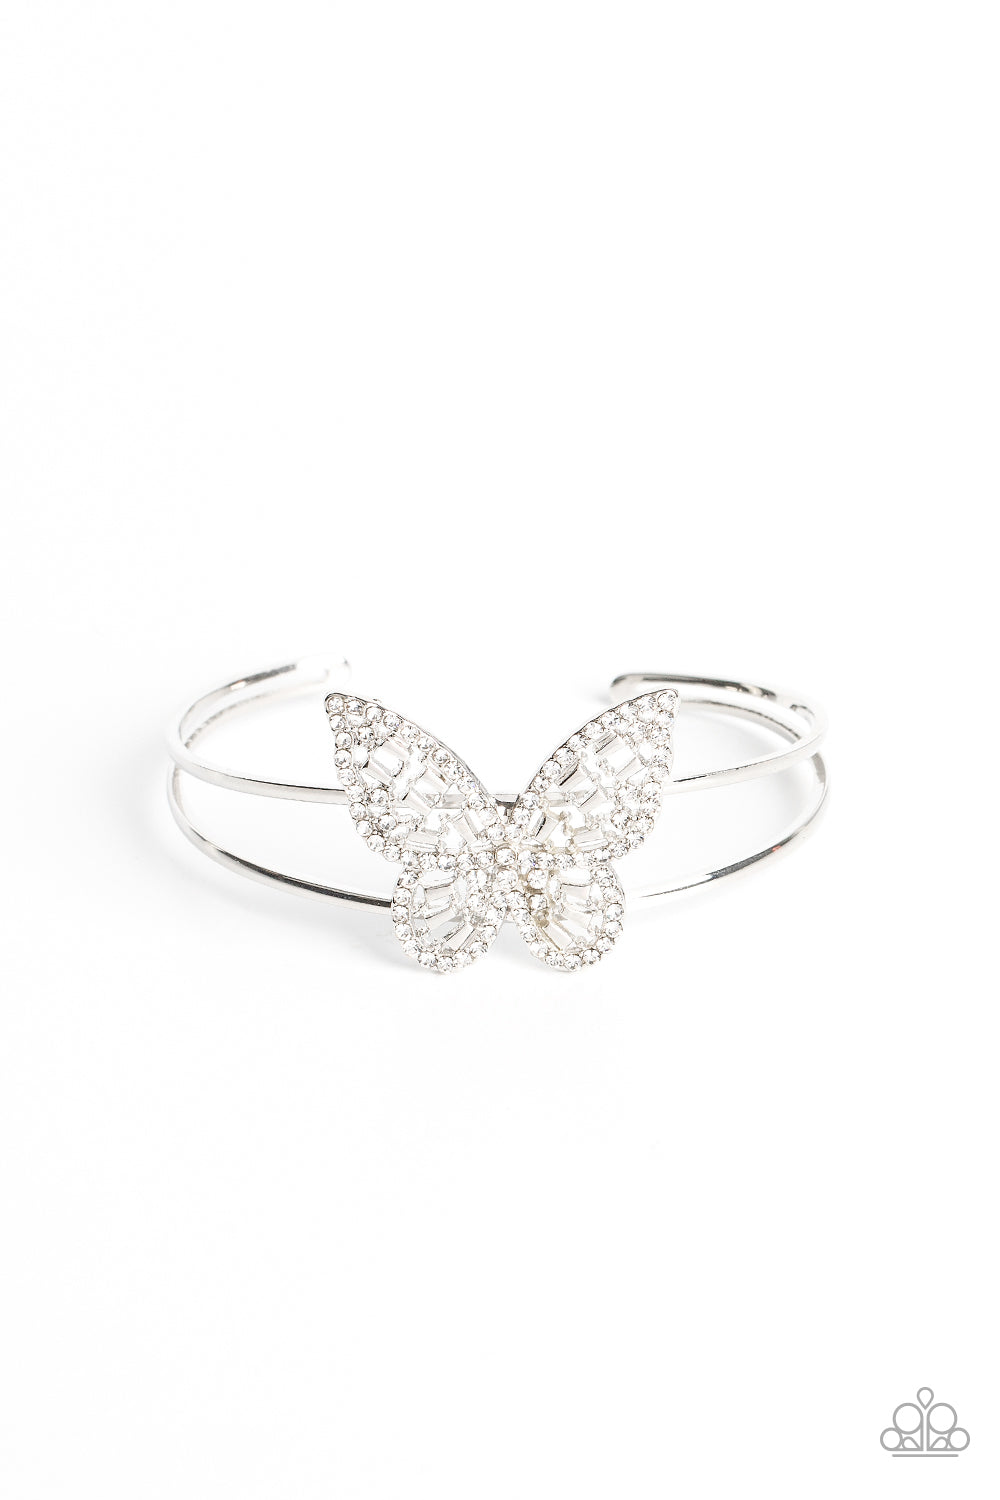 Butterfly Bella Bracelet__White